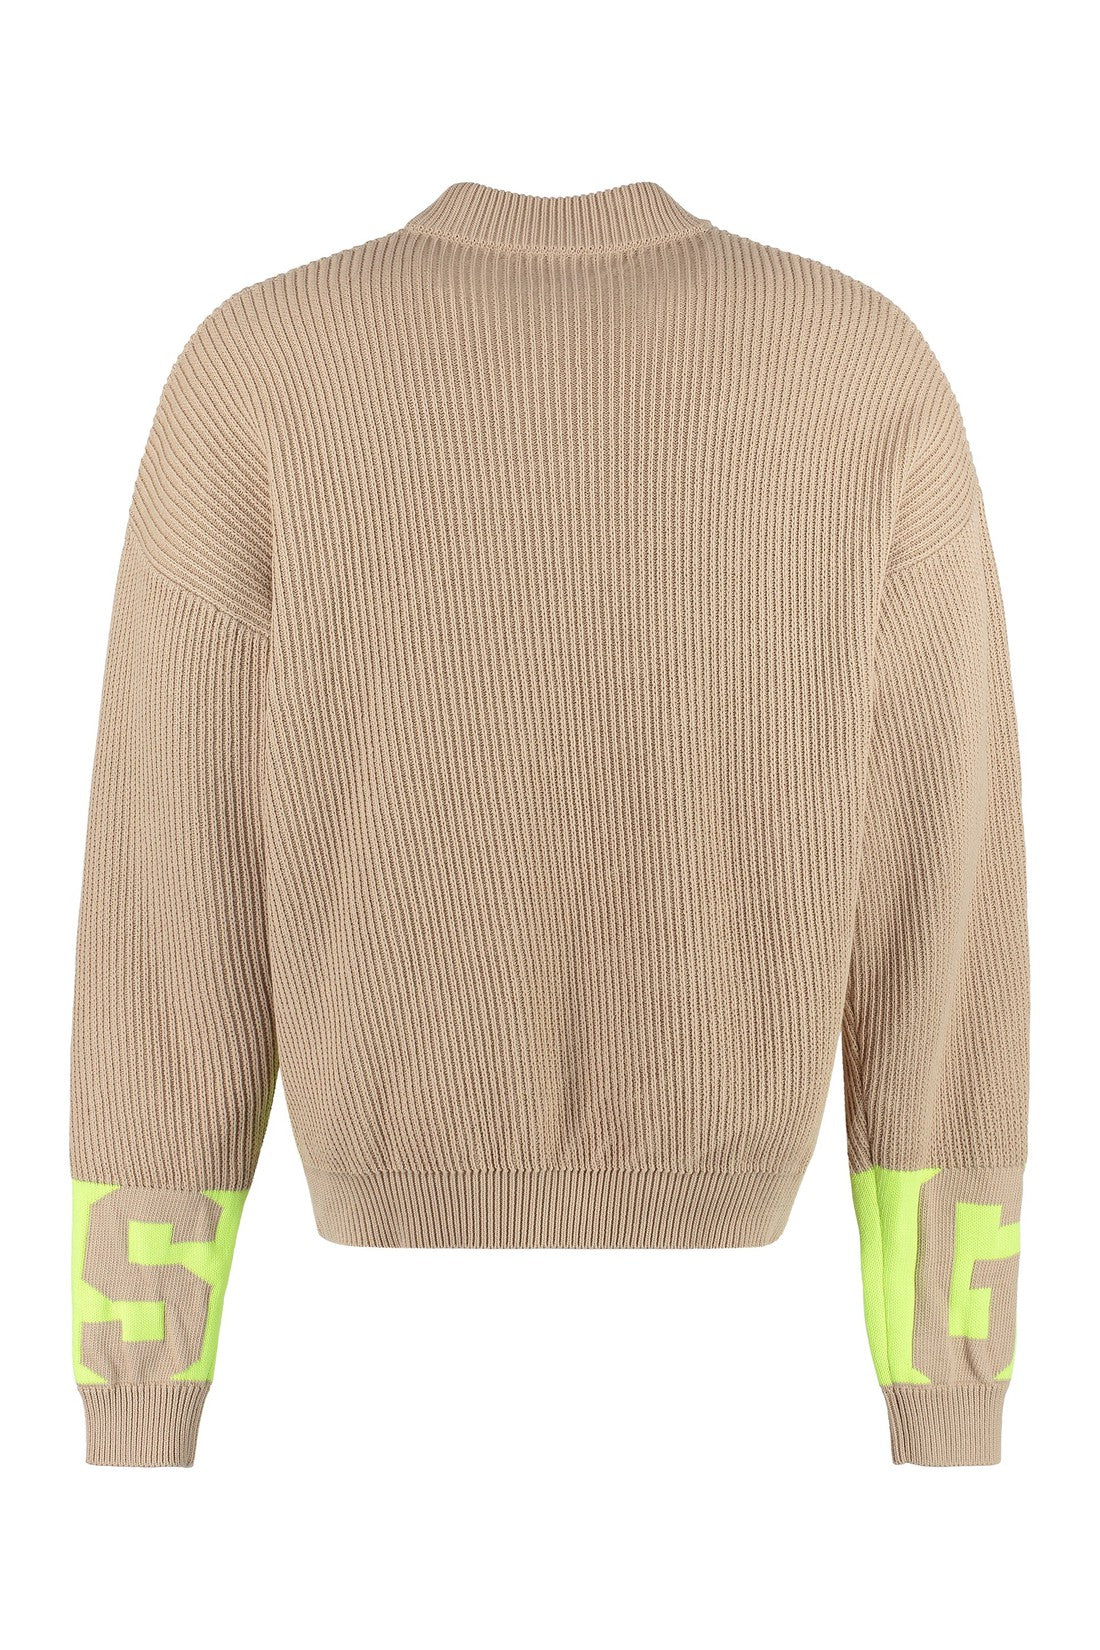 GCDS-OUTLET-SALE-Cotton crew-neck sweater-ARCHIVIST